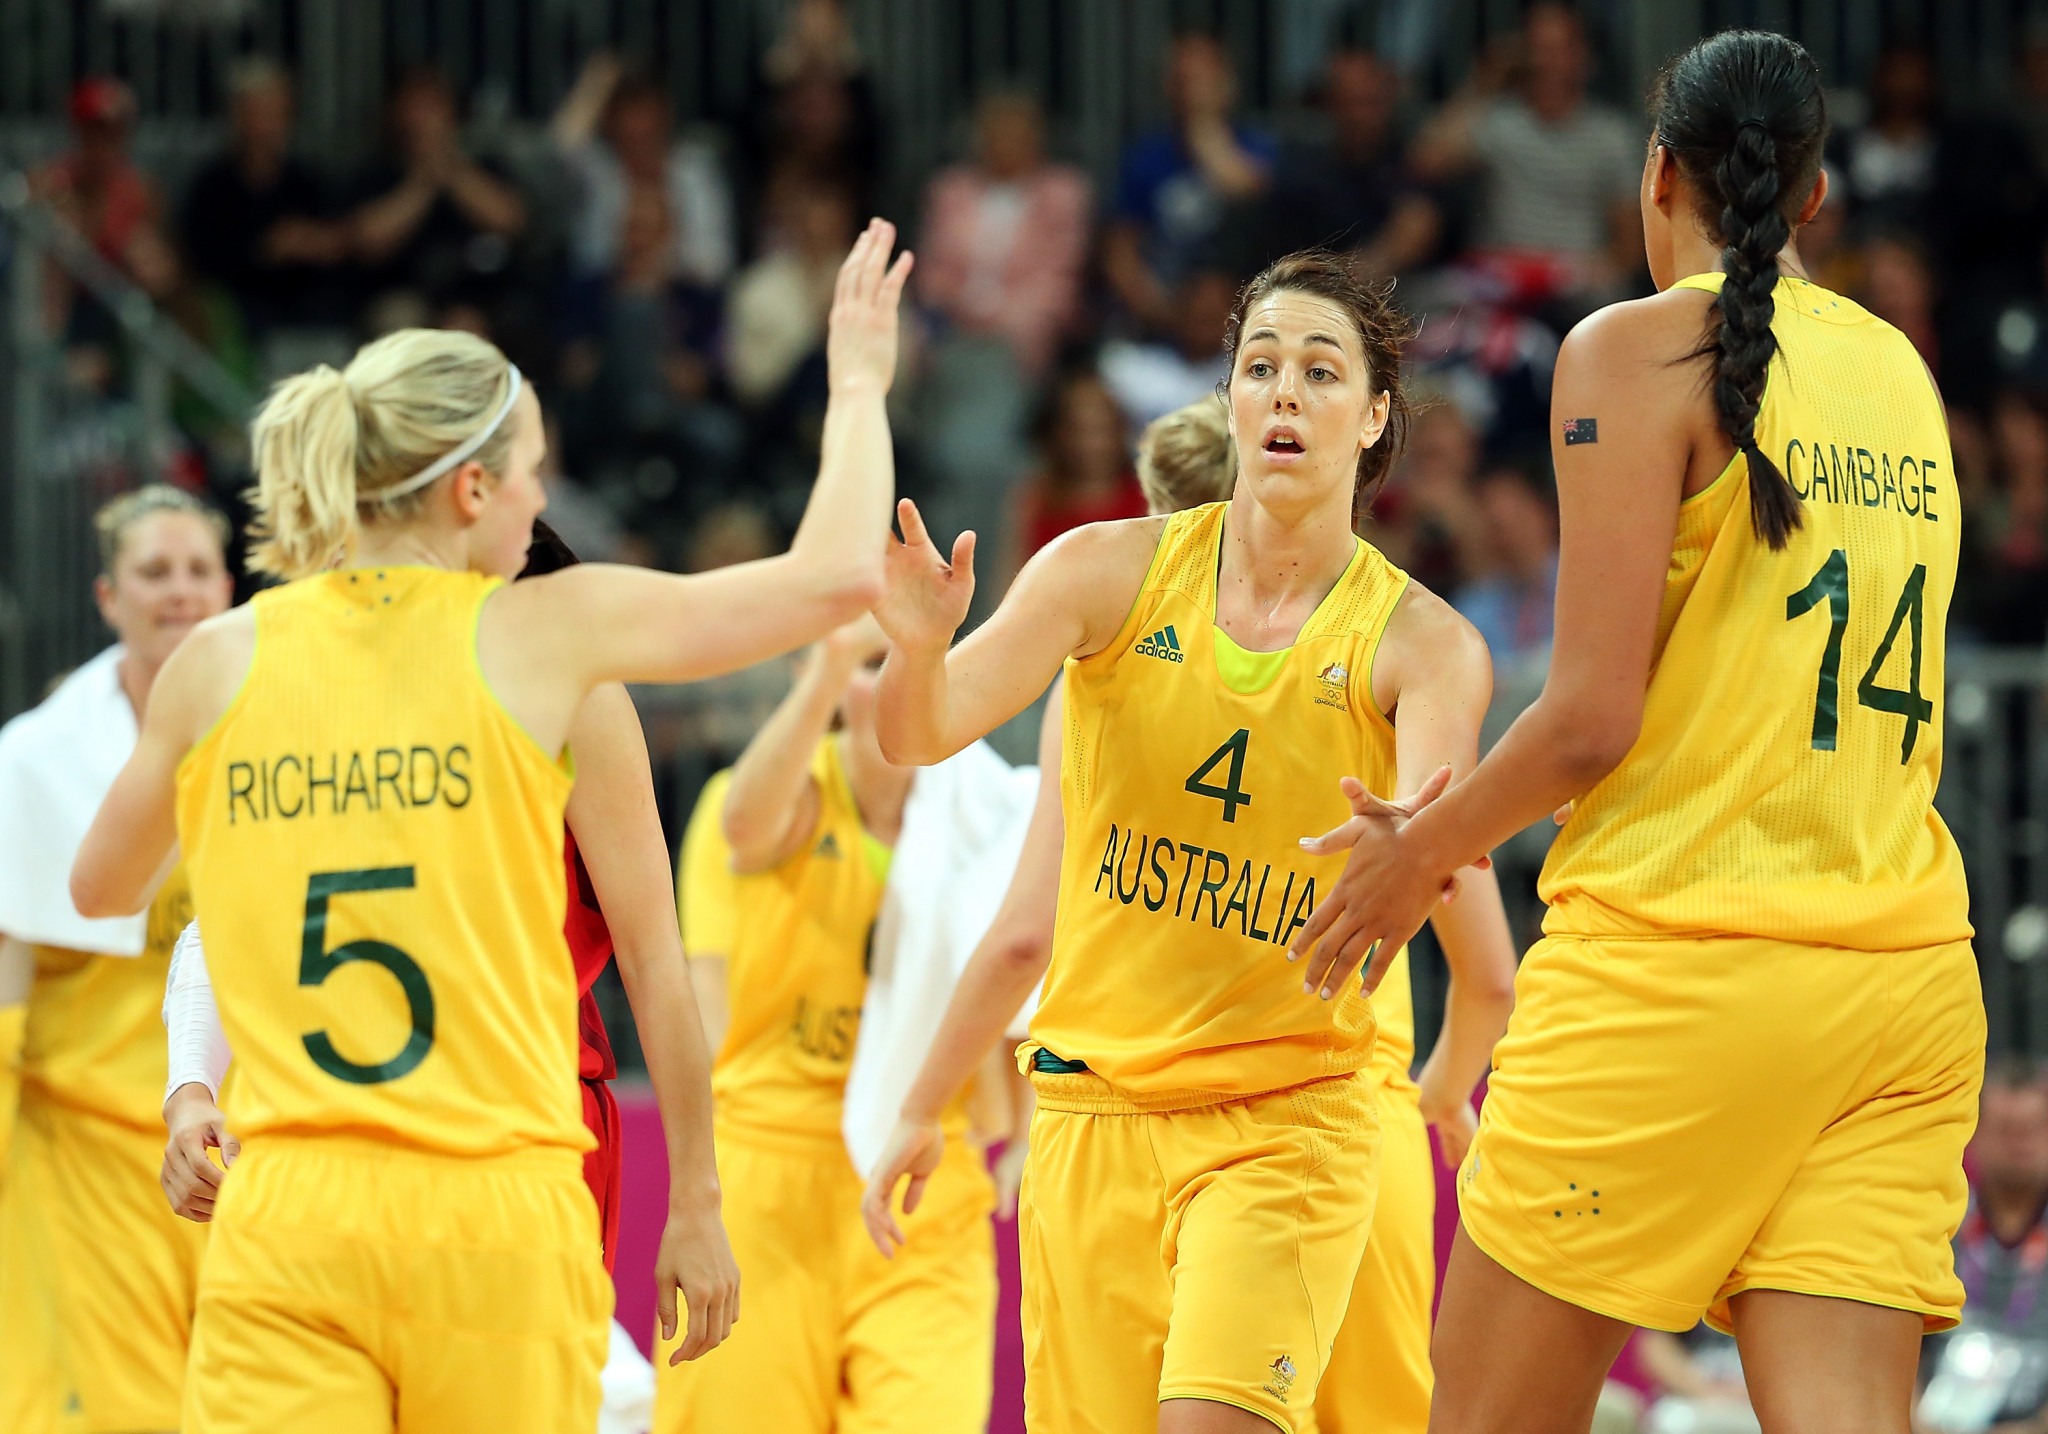 Австралия - Новая Зеландия. Прогноз и ставки на баскетбол. 2 июля 2023 года